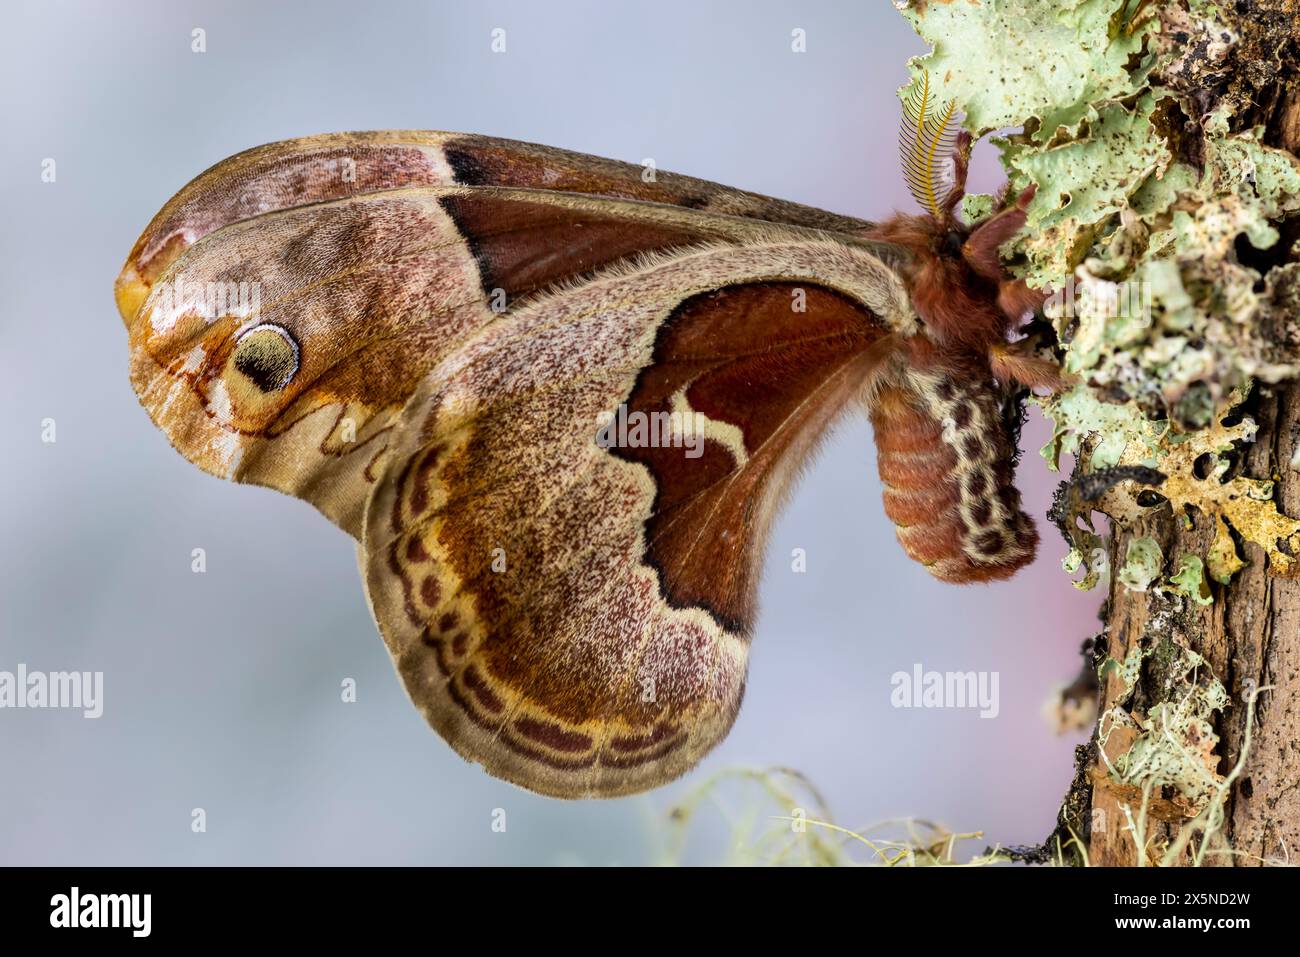 Stati Uniti, Stato di Washington, Sammamish. Prometeo femmina falena di seta su ramo coperto di lichene Foto Stock